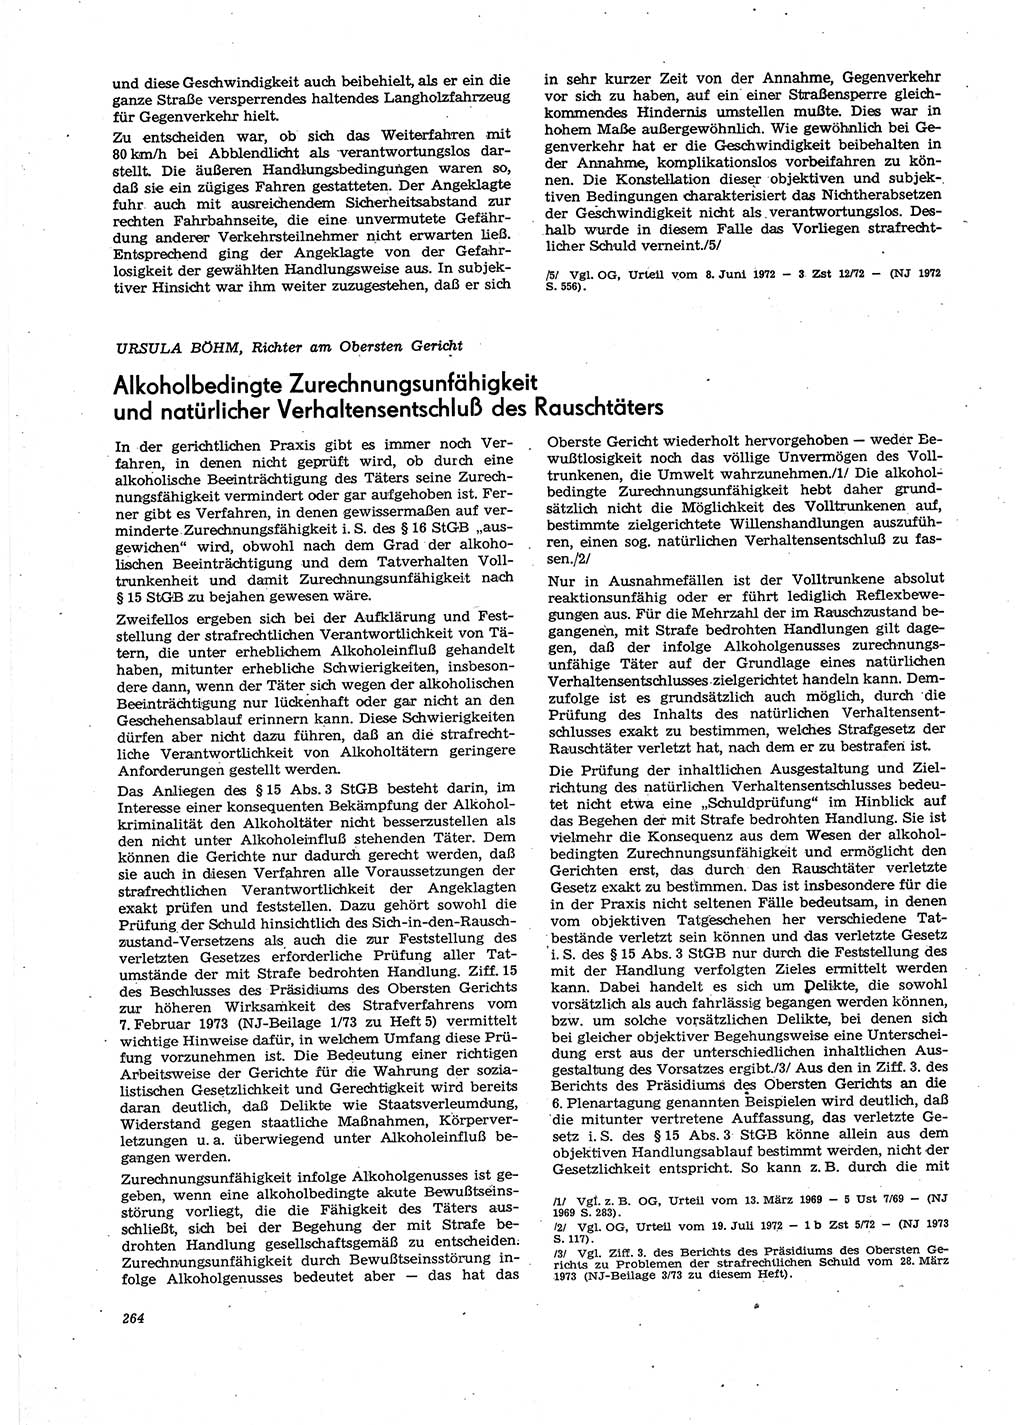 Neue Justiz (NJ), Zeitschrift für Recht und Rechtswissenschaft [Deutsche Demokratische Republik (DDR)], 27. Jahrgang 1973, Seite 264 (NJ DDR 1973, S. 264)